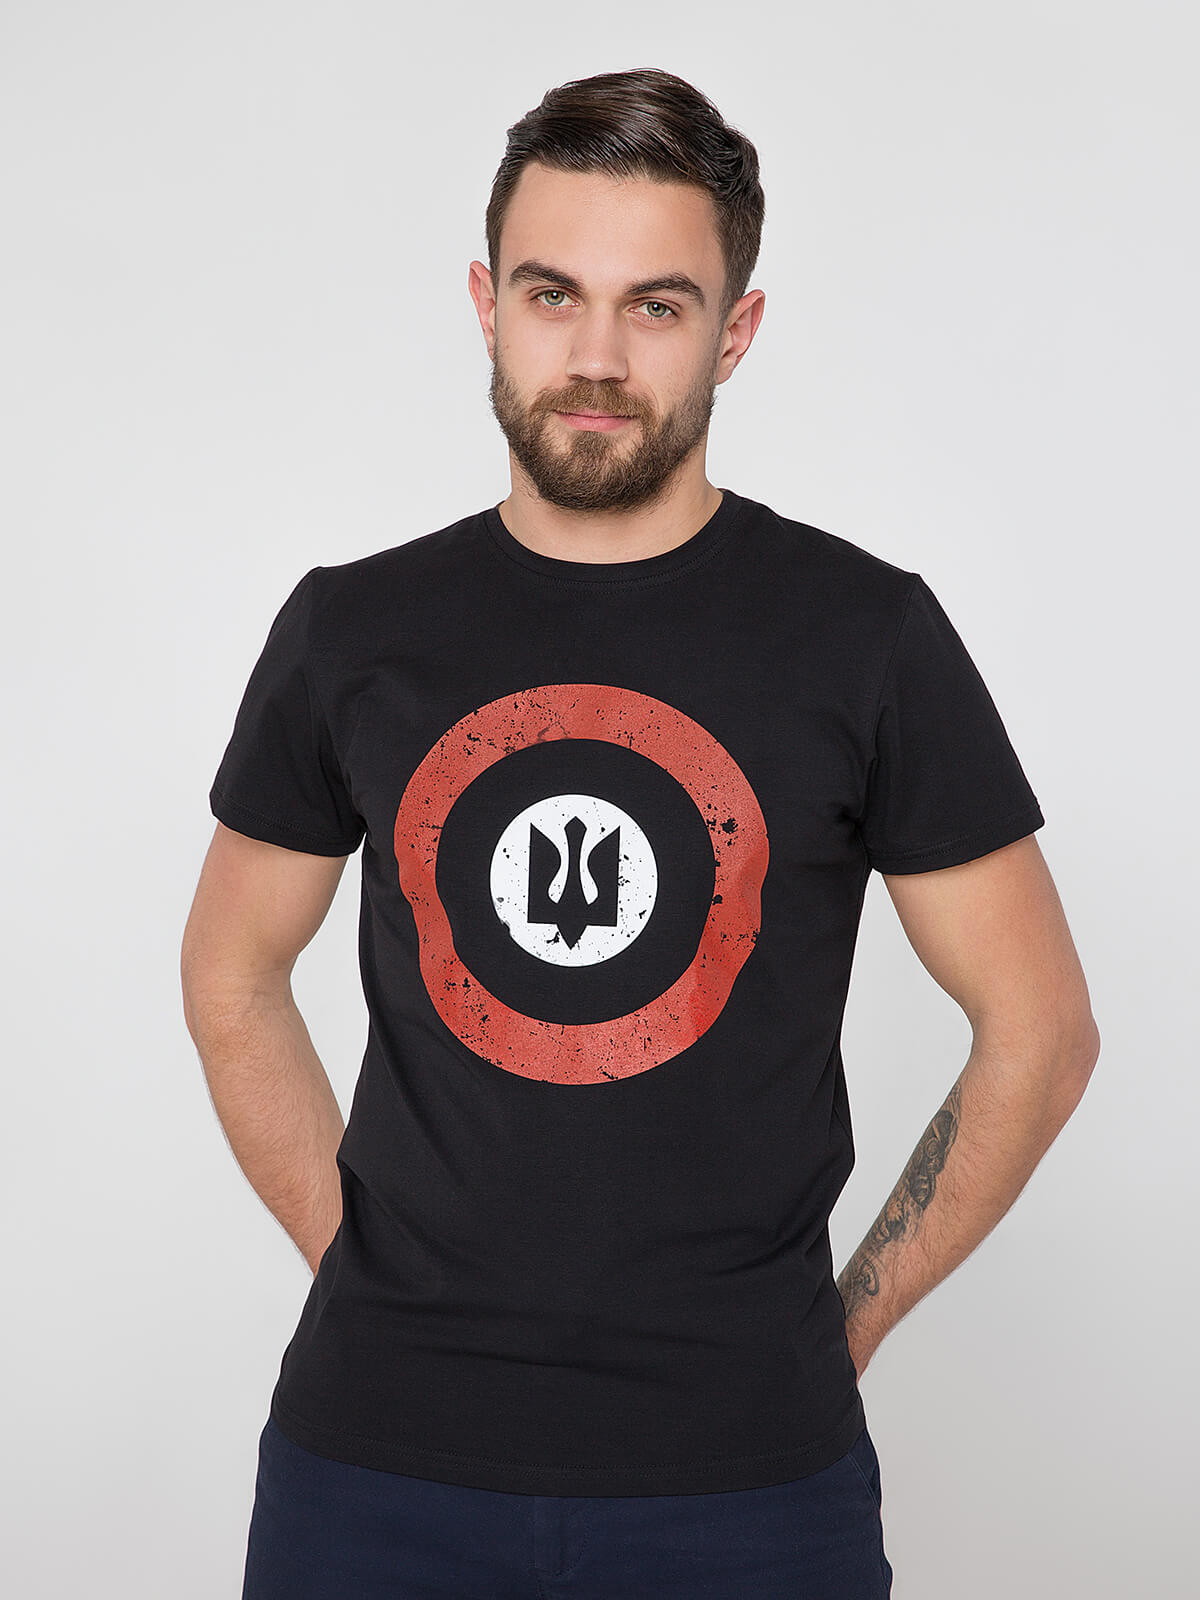 Men's T-Shirt Roundel. Color black. Unisex T-shirt (men’s sizes).